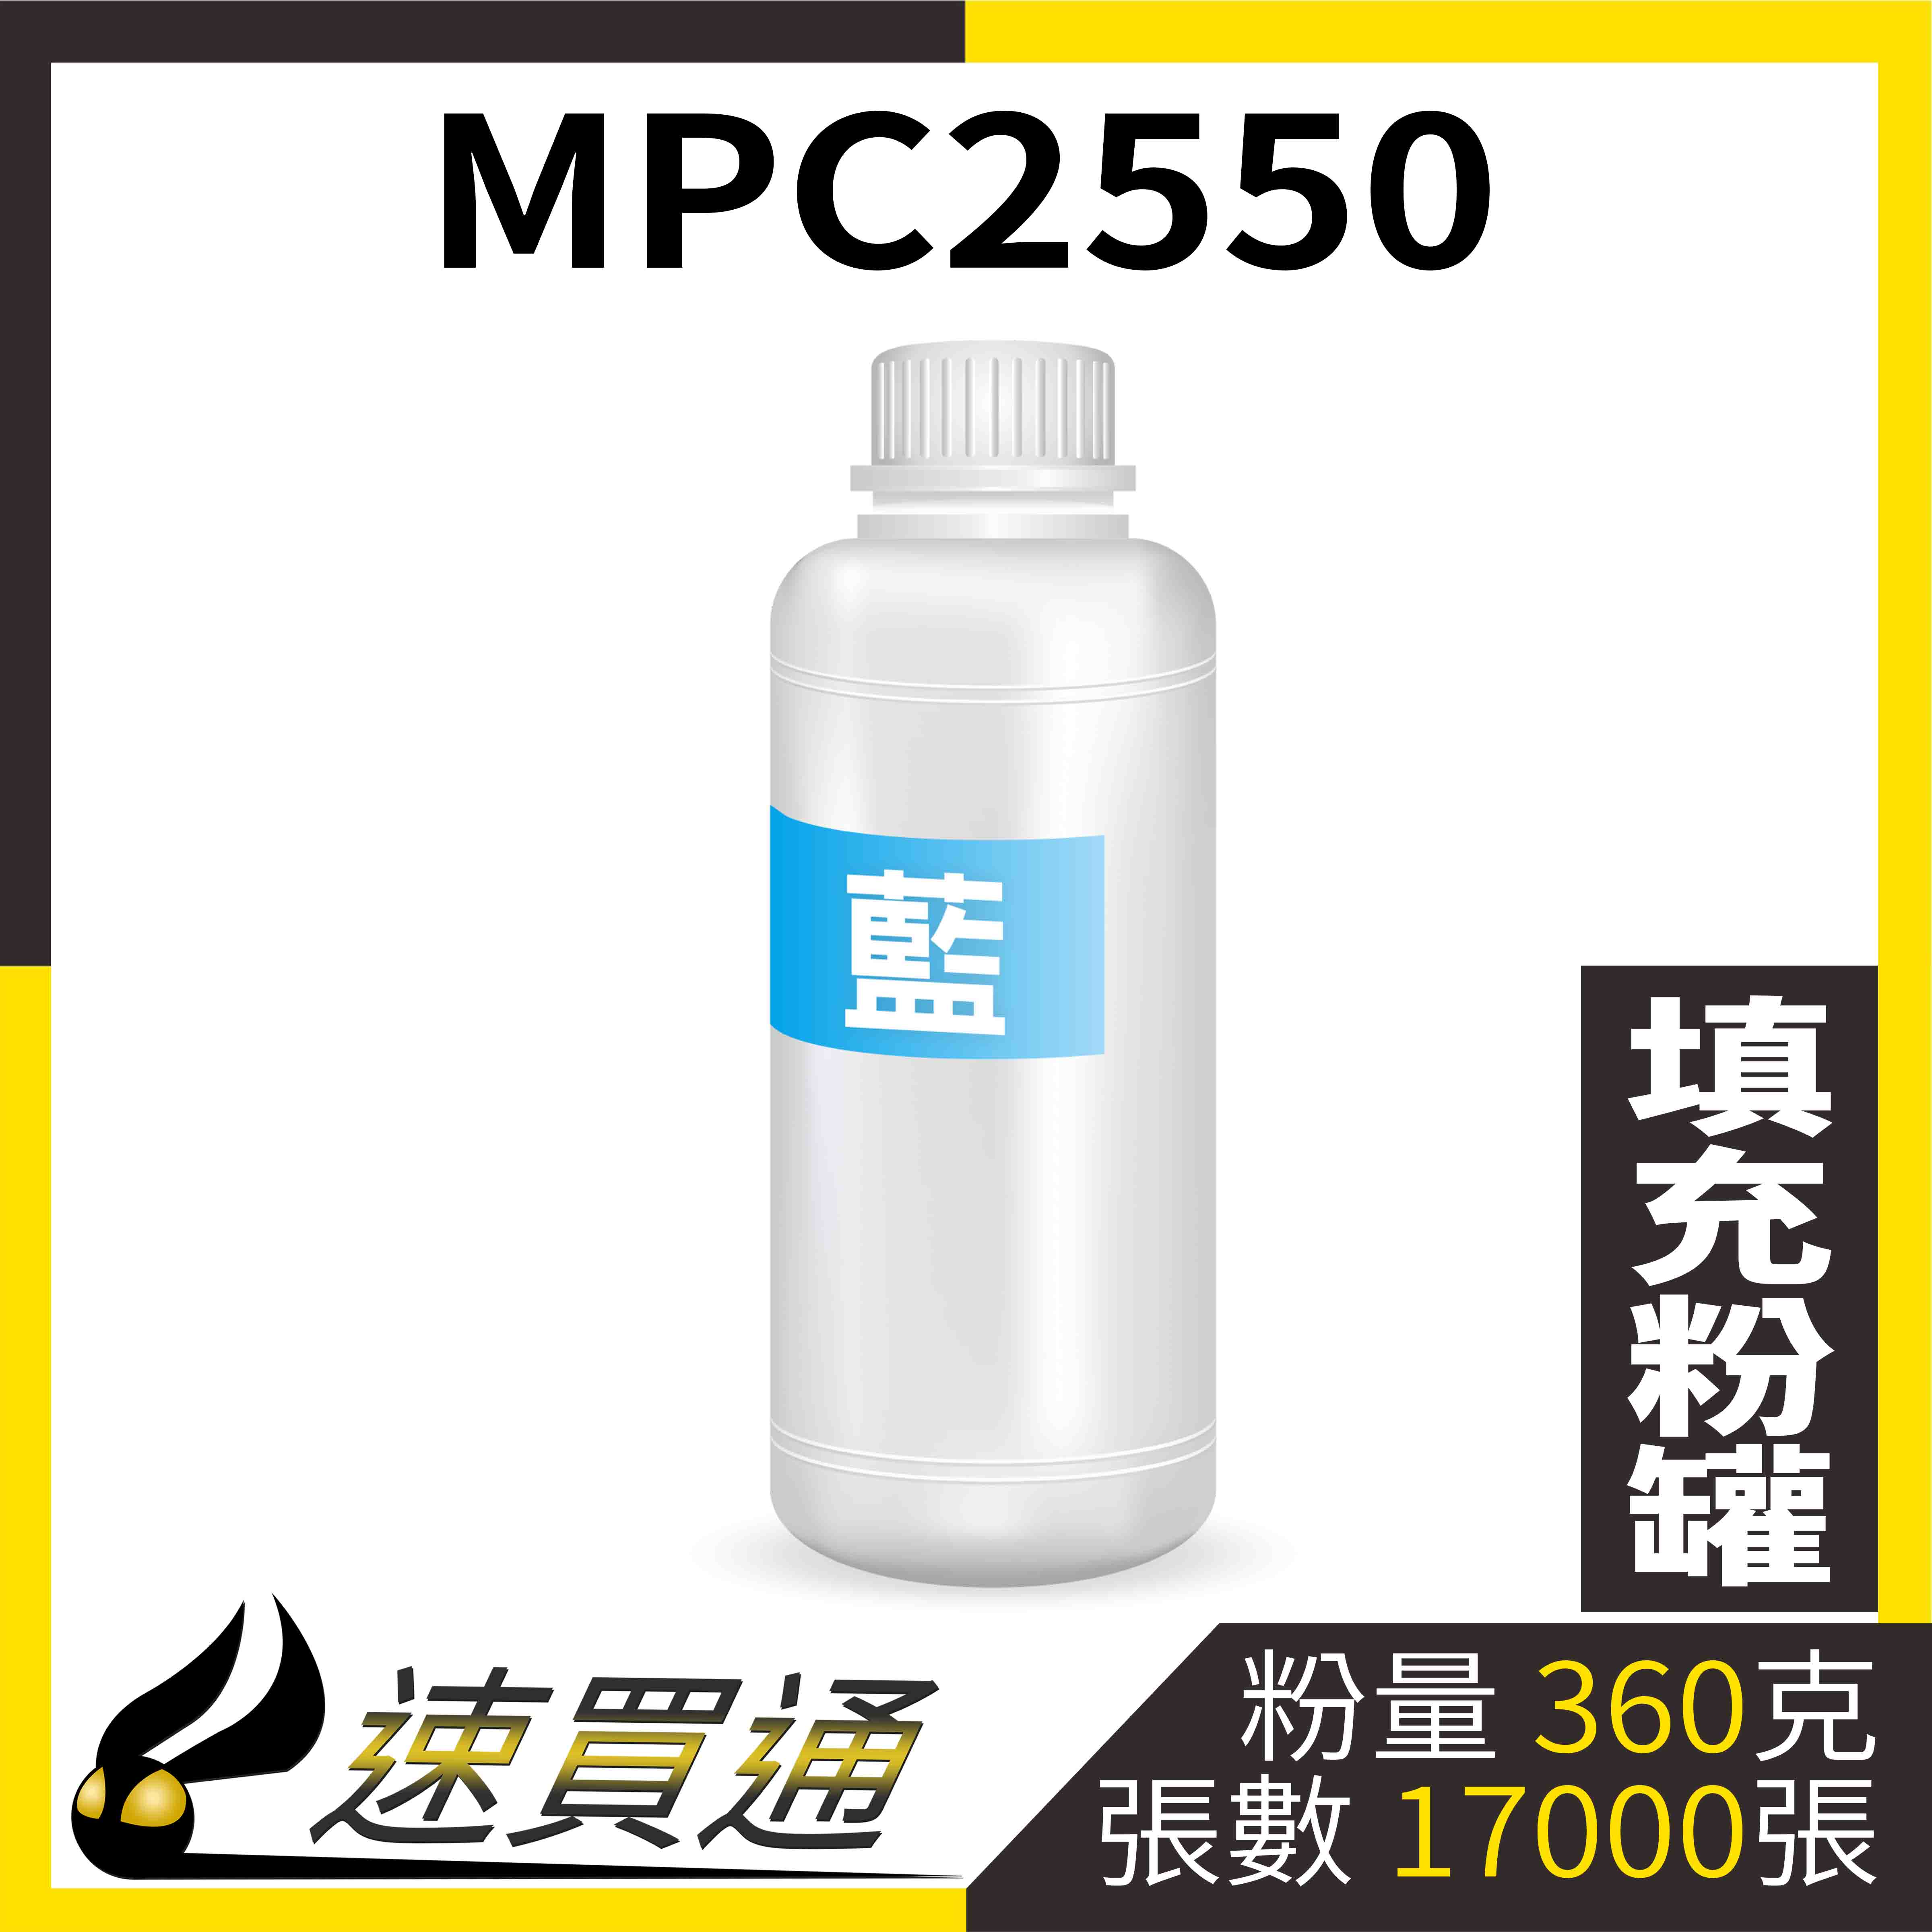 【速買通】RICOH MPC2550 藍 填充式碳粉罐